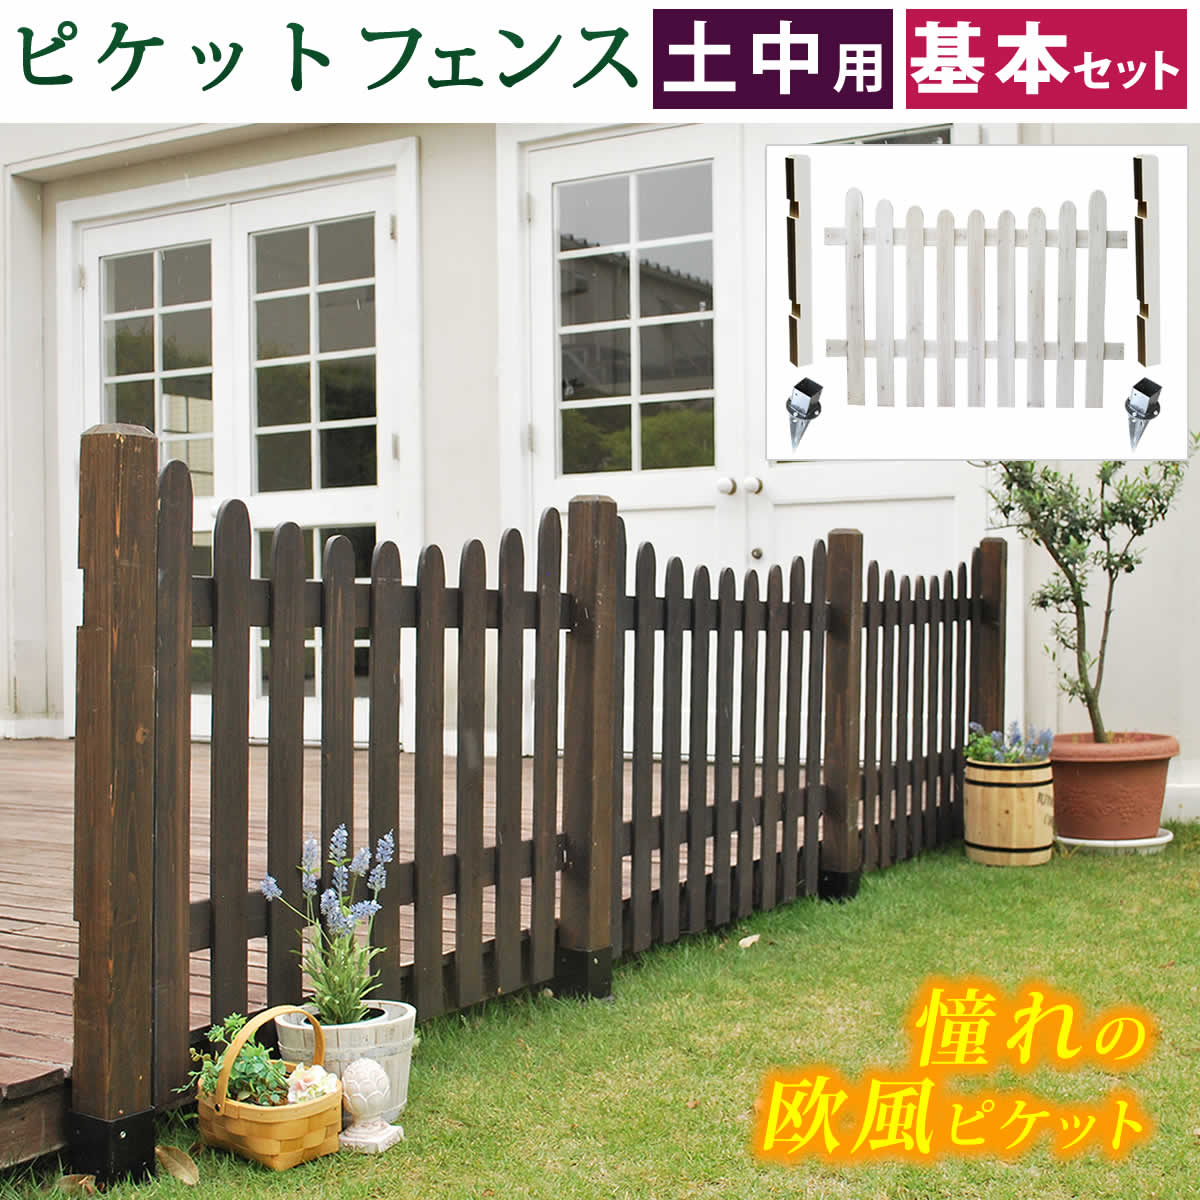 【予約】 ガーデニング フェンス 木製 白 自立 おしゃれ ガーデン 柵 低め 天然木 ミニ ディスプレイ インテリア ウッド